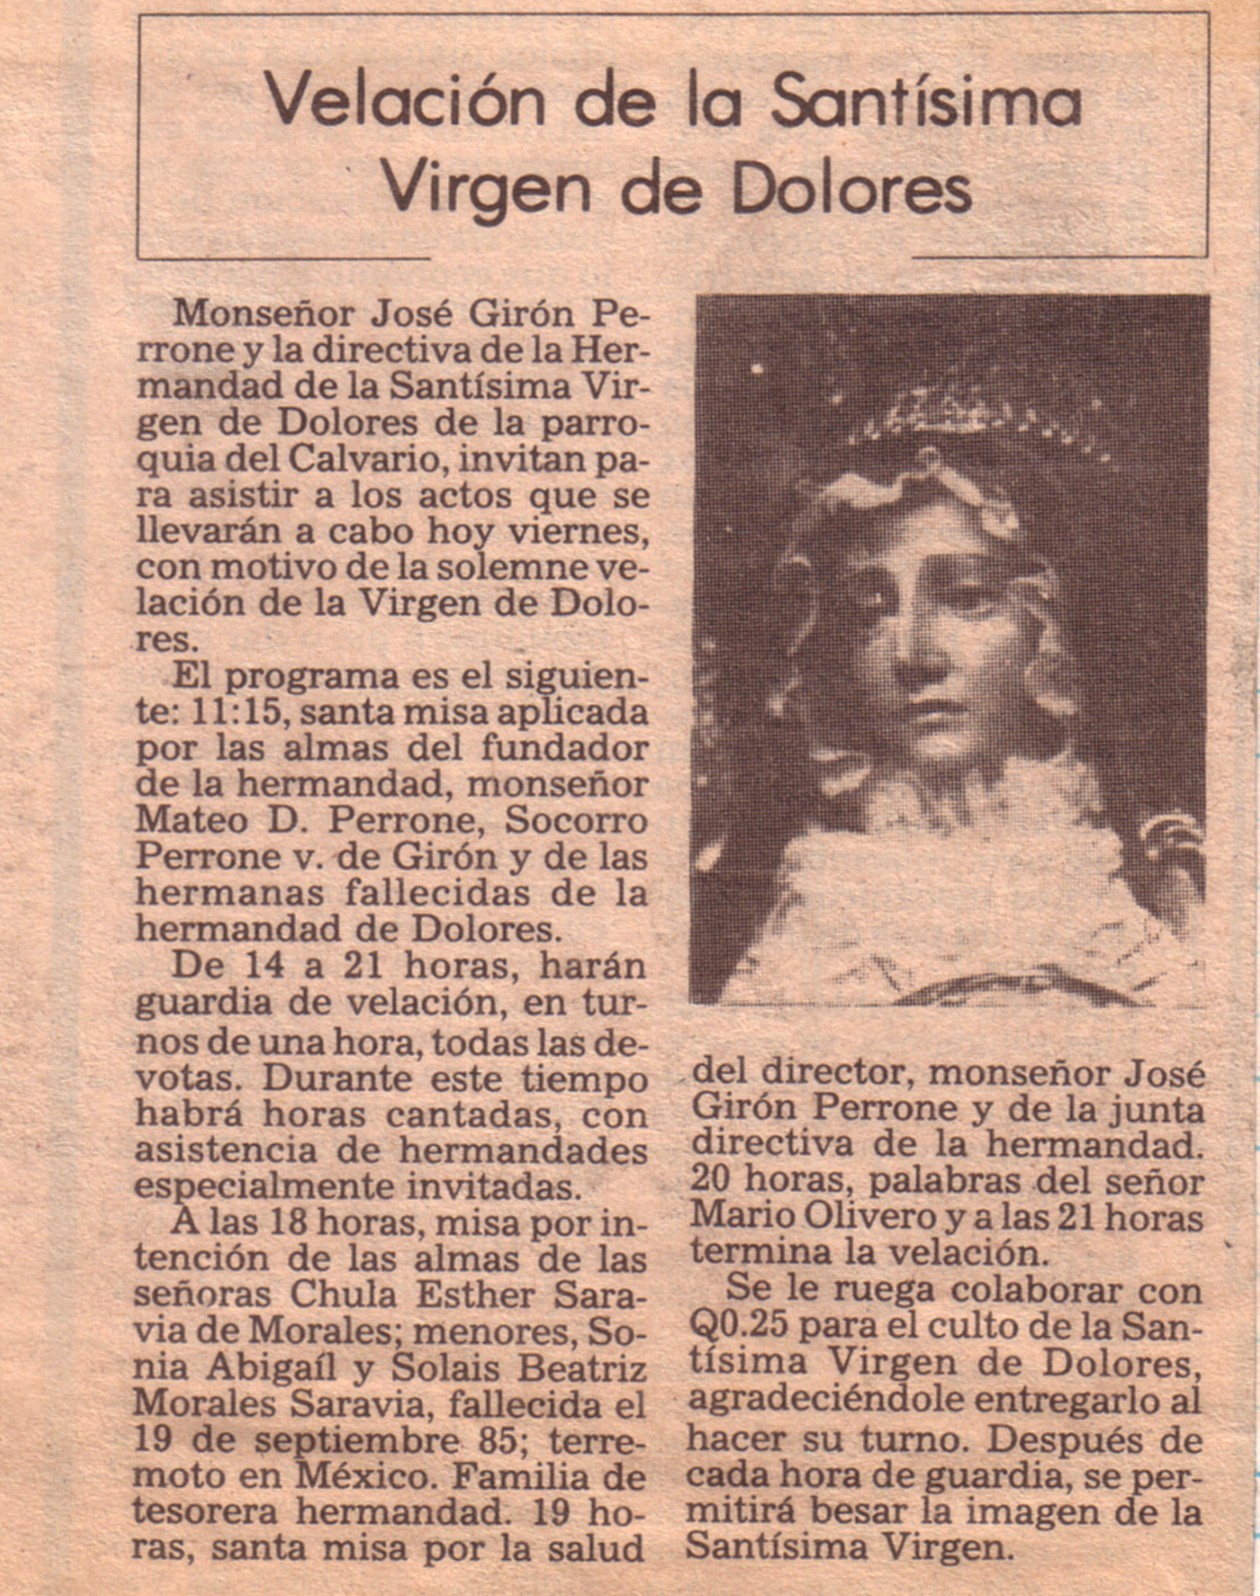 Articulo en prensa sobre la famosa velación de la Reina de la Paz